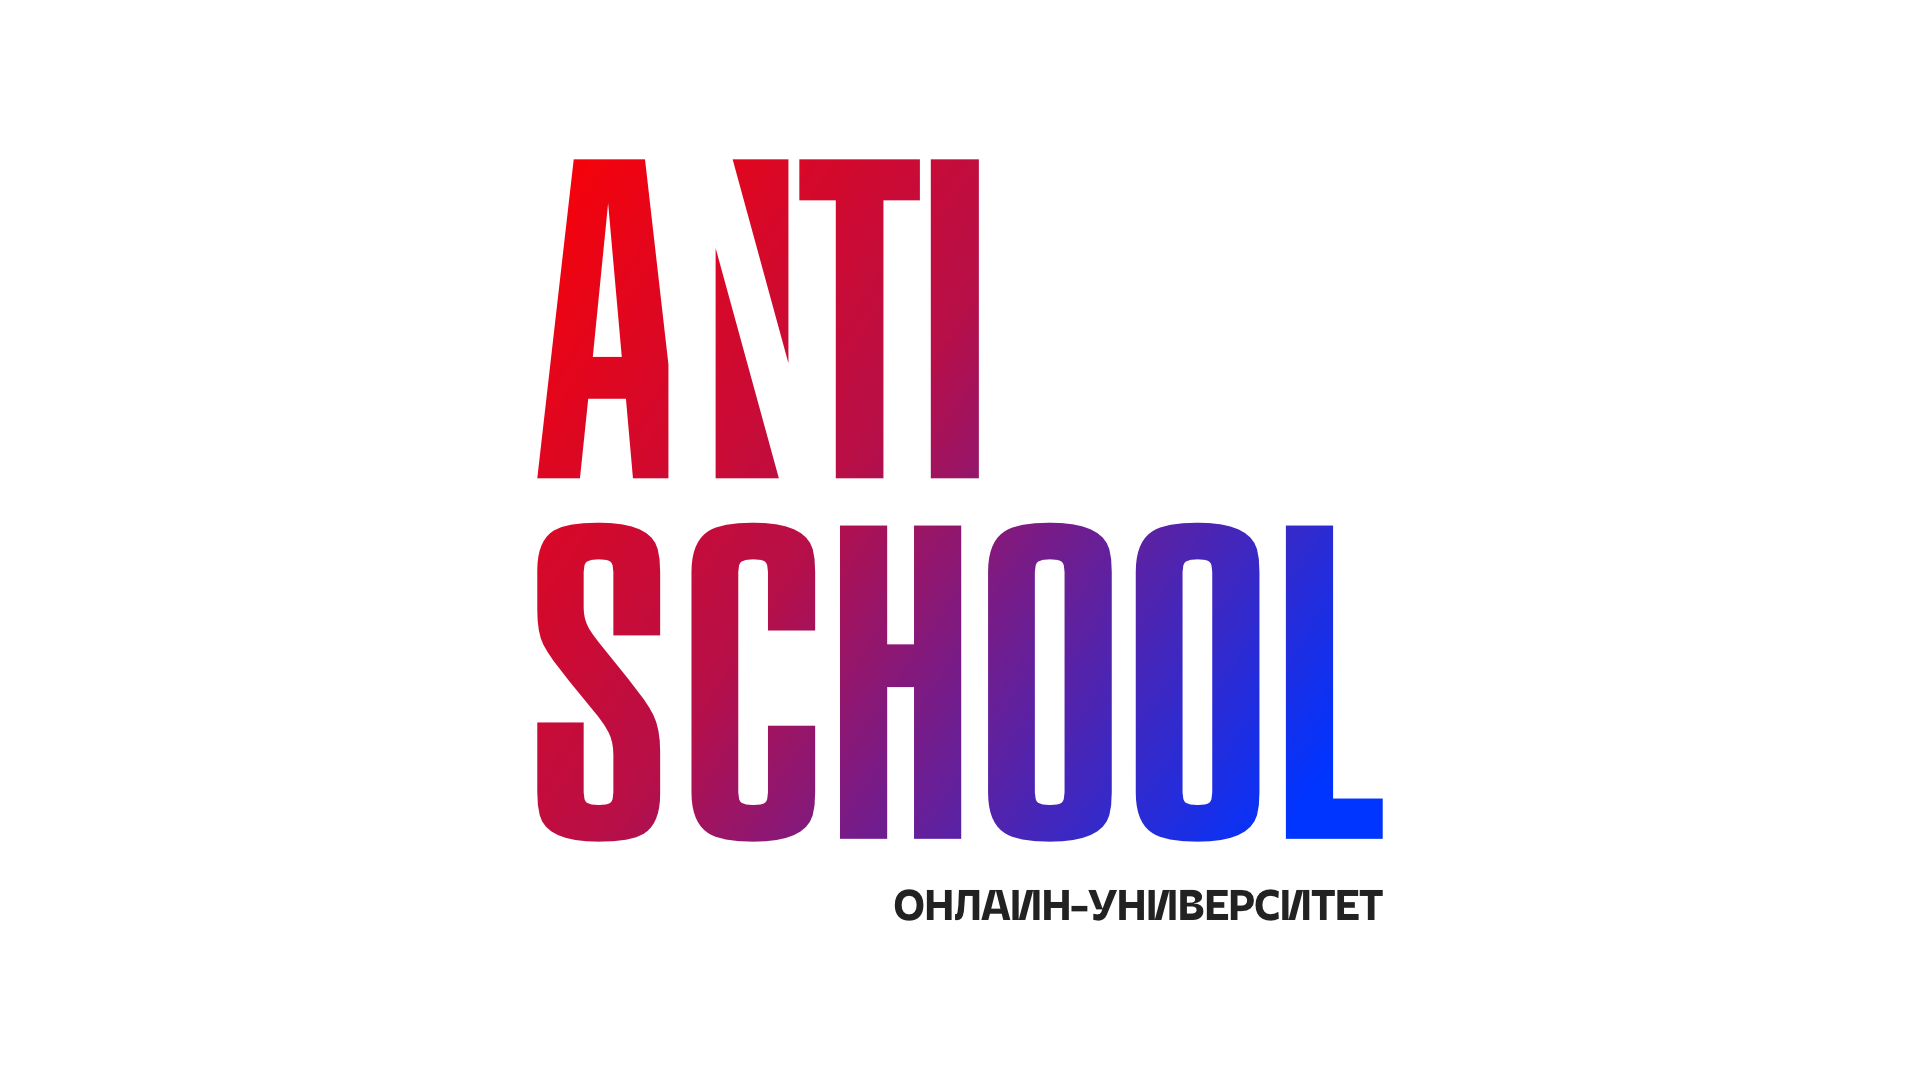 Онлайн-университет «ANTI SCHOOL»